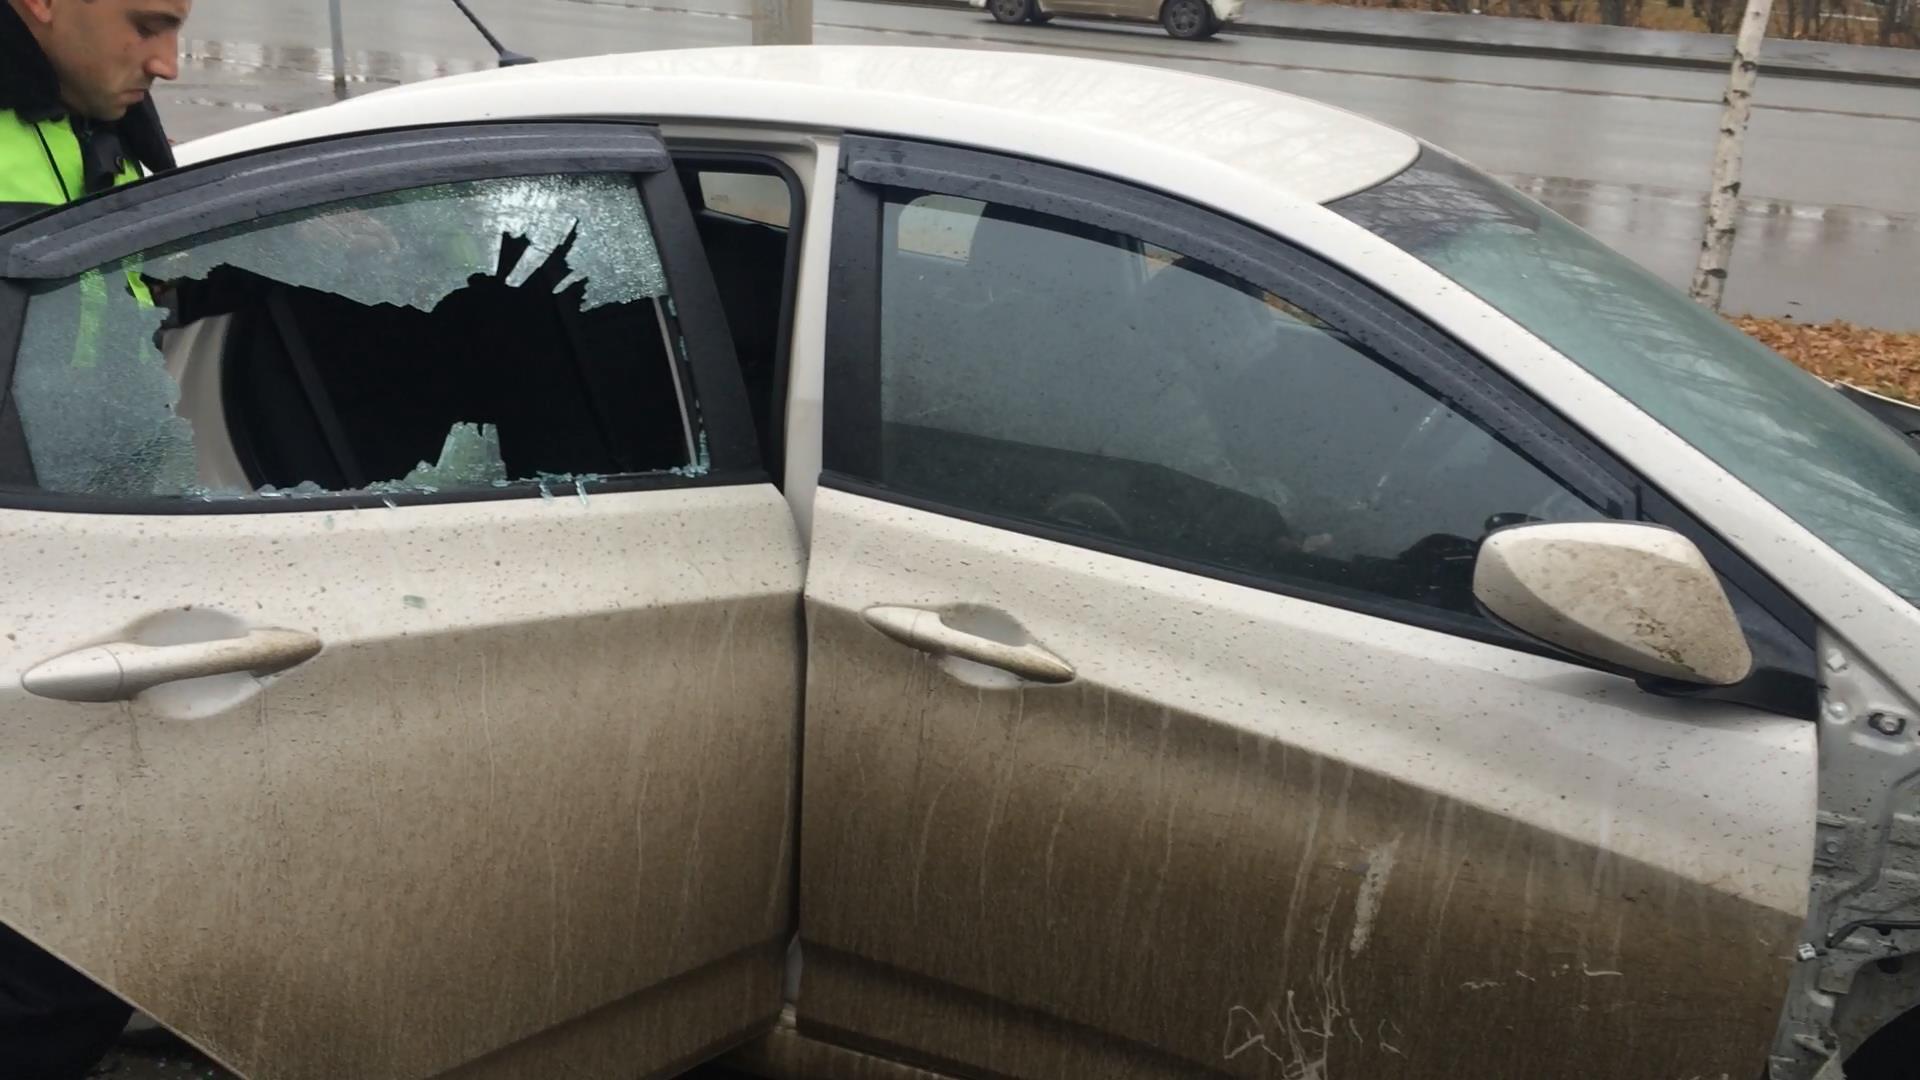 Разбиты окна машин. Разбитое стекло автомобиля. Разбивает стекло авто. Разбили стекло в машине. Машина с разбитым стеклом.